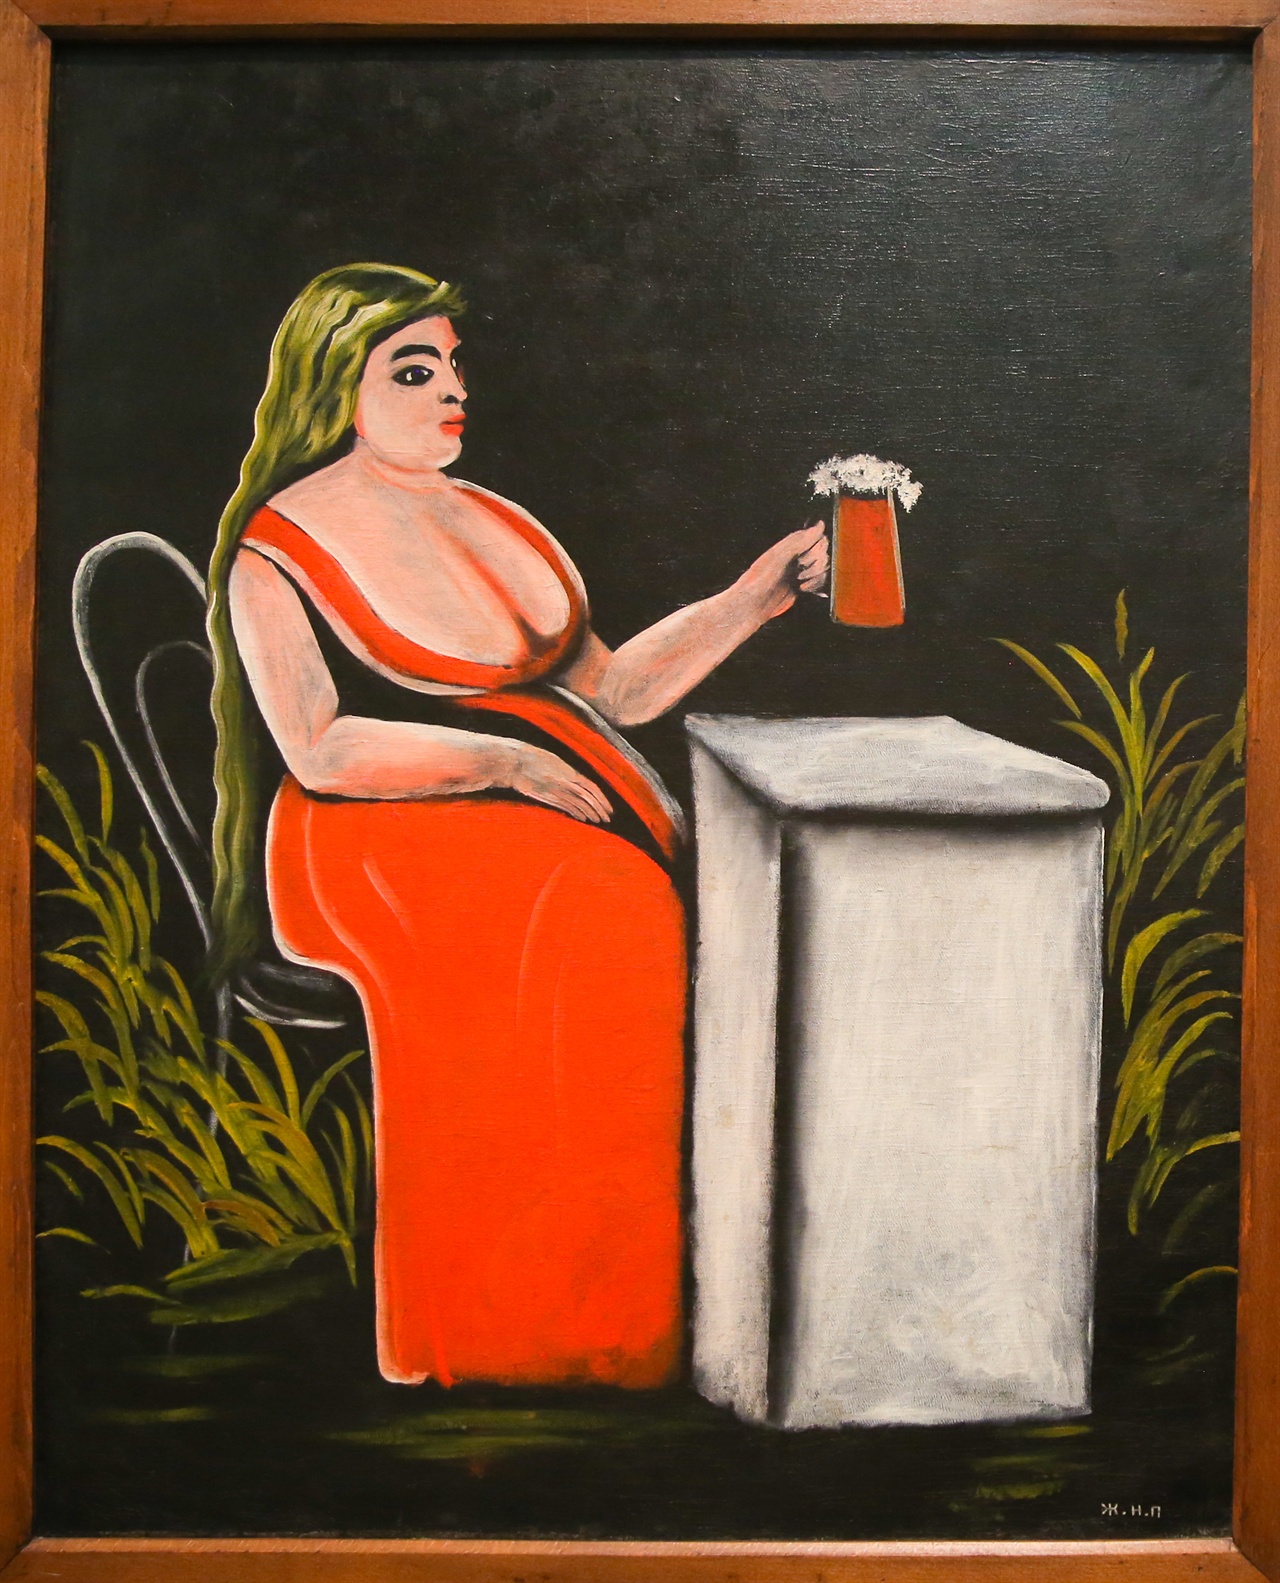 창녀로 추정되는 여인이 맥주잔을 들고 정면을 응시하고 있다. 피로스마니의 몇 안되는 여자 초상화 중의 하나이다.